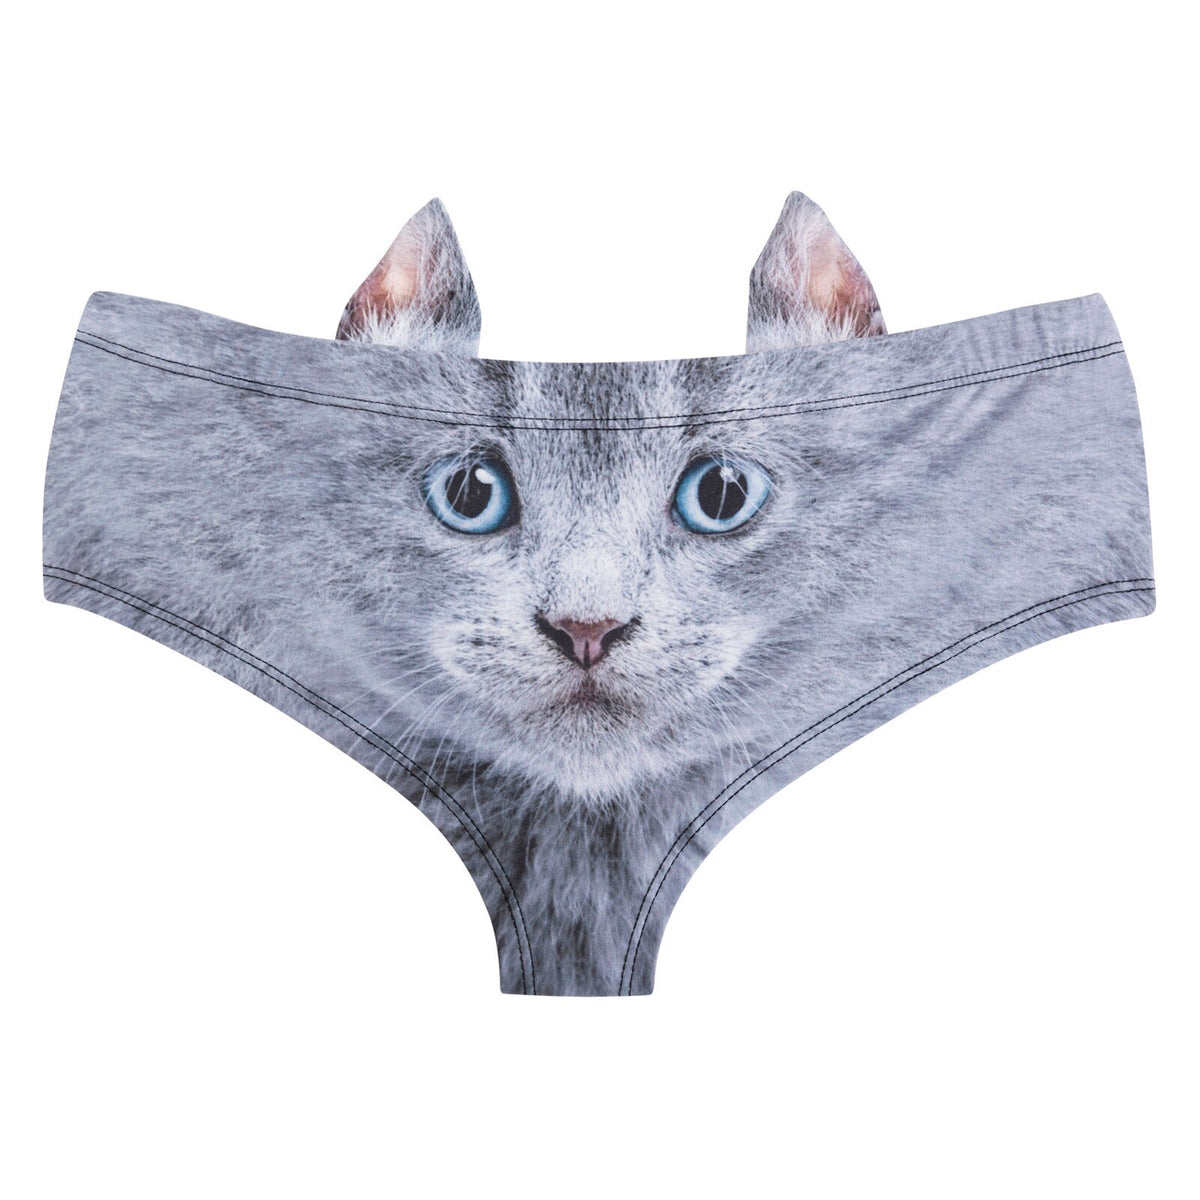 Cat Underwear with Ears